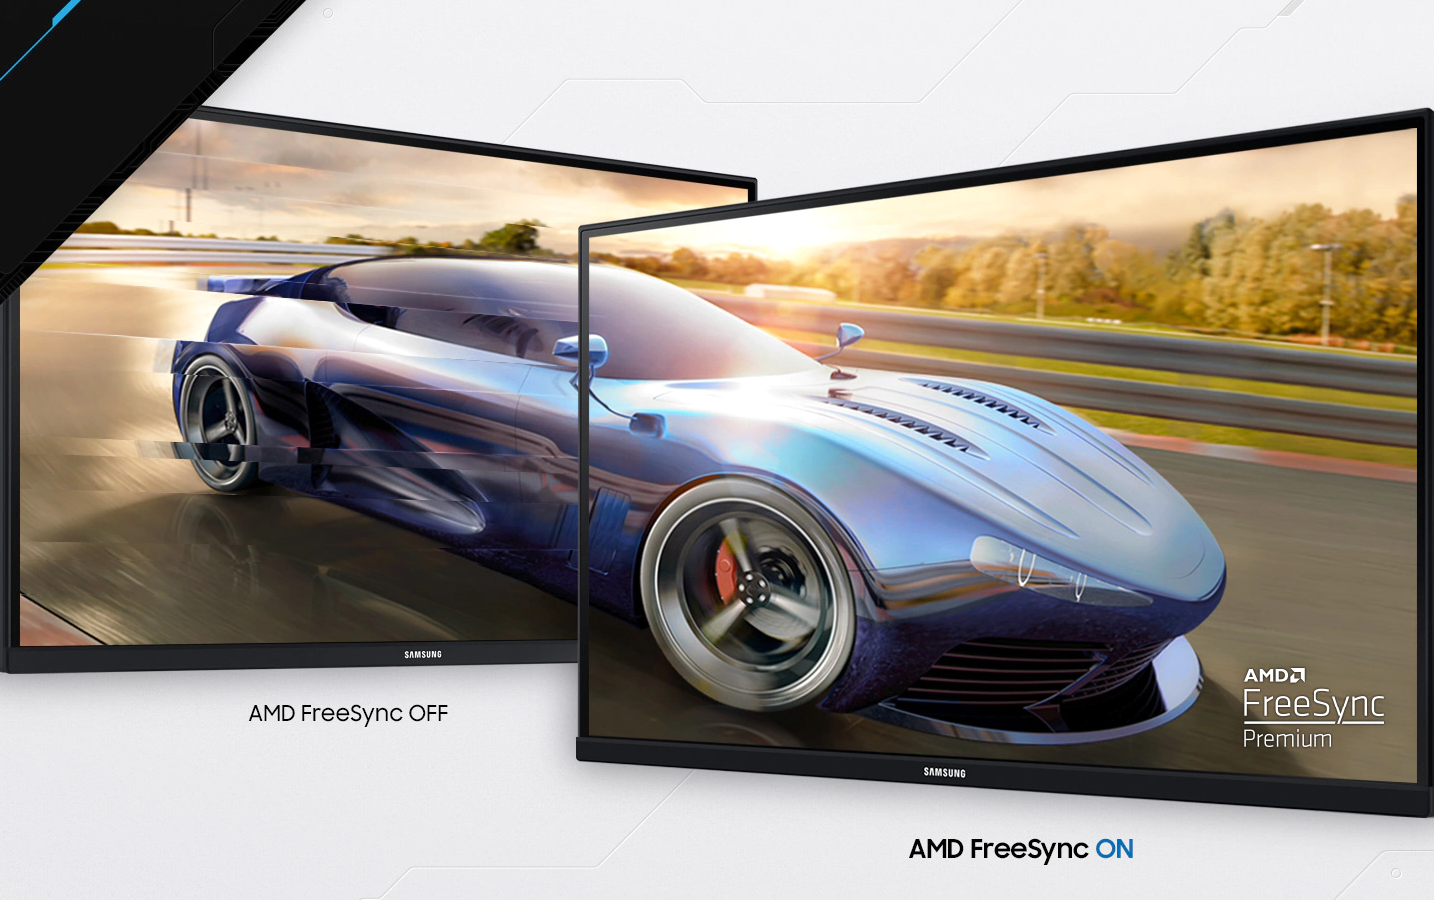 Monitor Samsung Odyssey G3 eliminuje nepjemn trhn a vskyt takzvanch duch pomoc technologie NVIDIA G-Sync, m zaru ostr hern vizualizace.